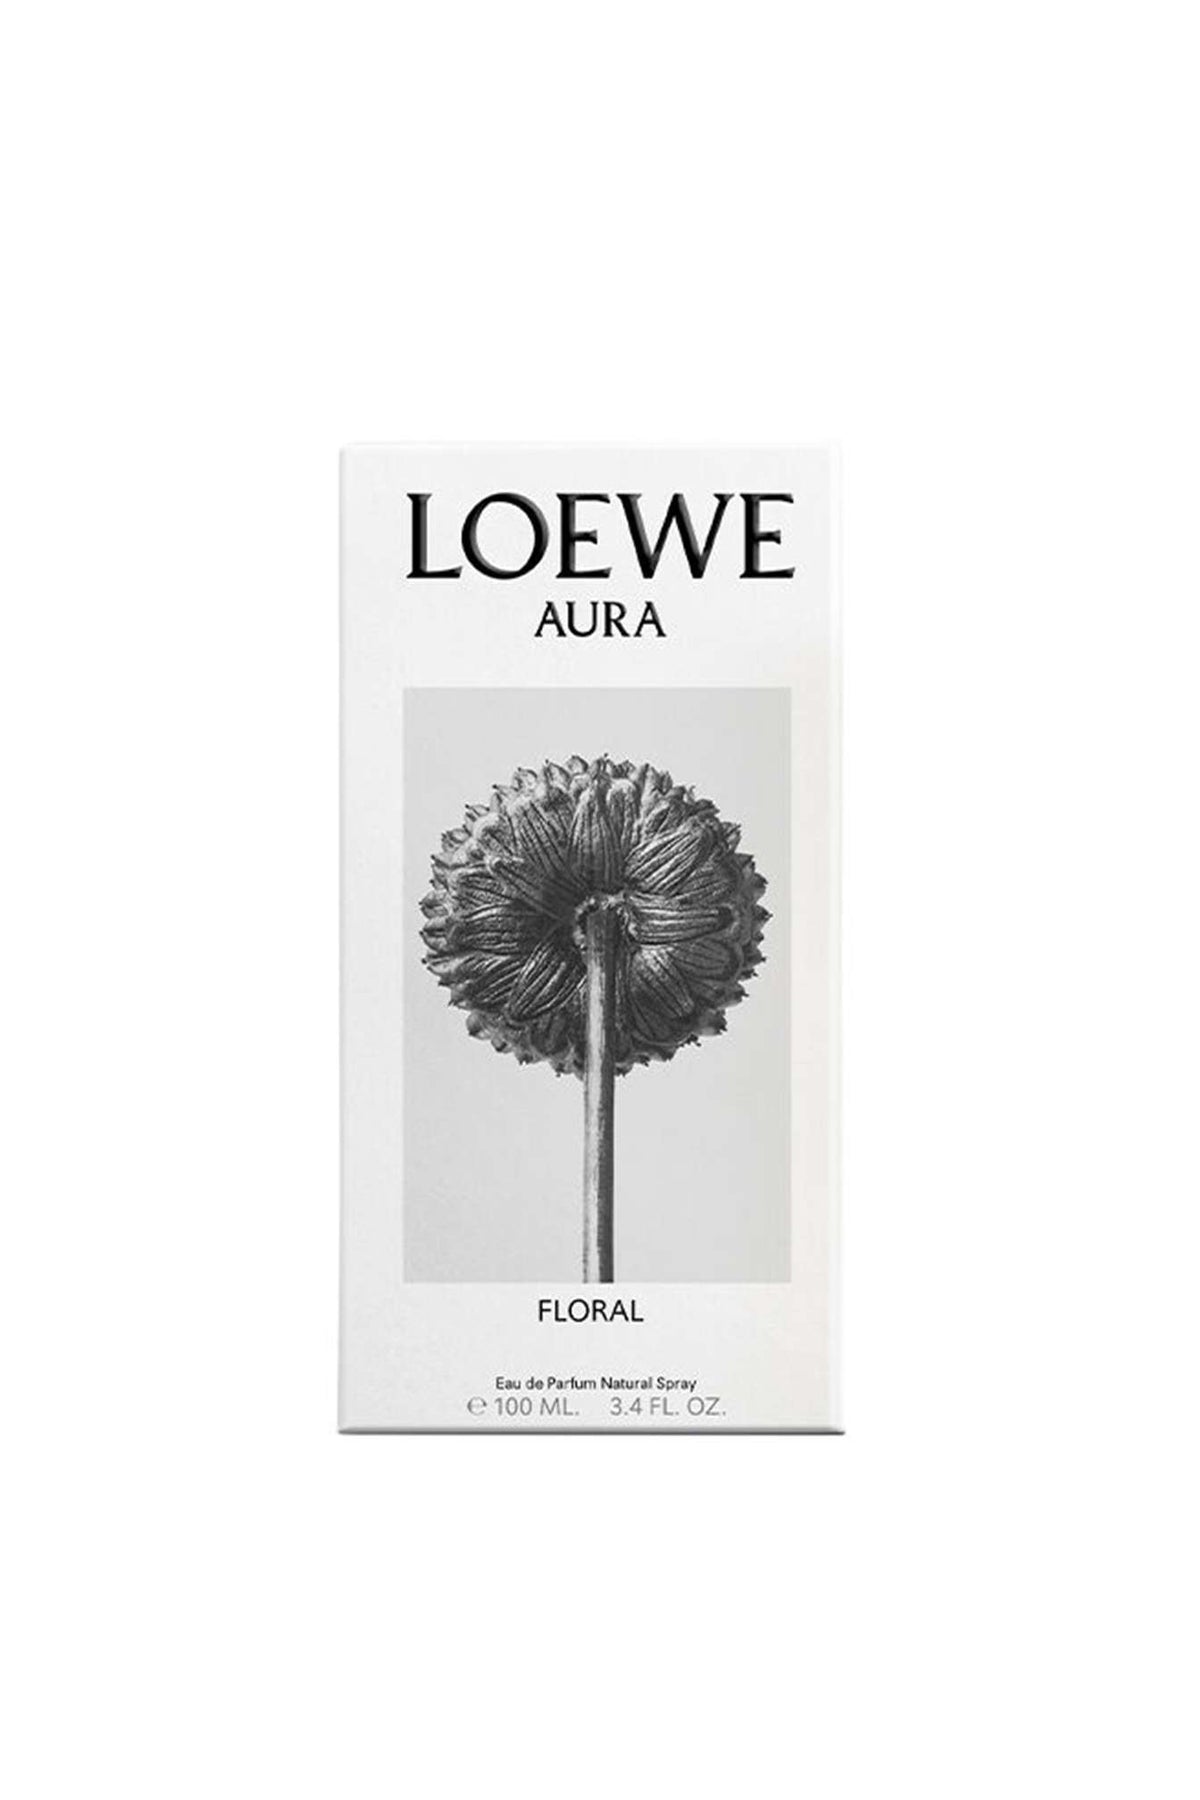 Loewe Aura Floral Eau De Parfum